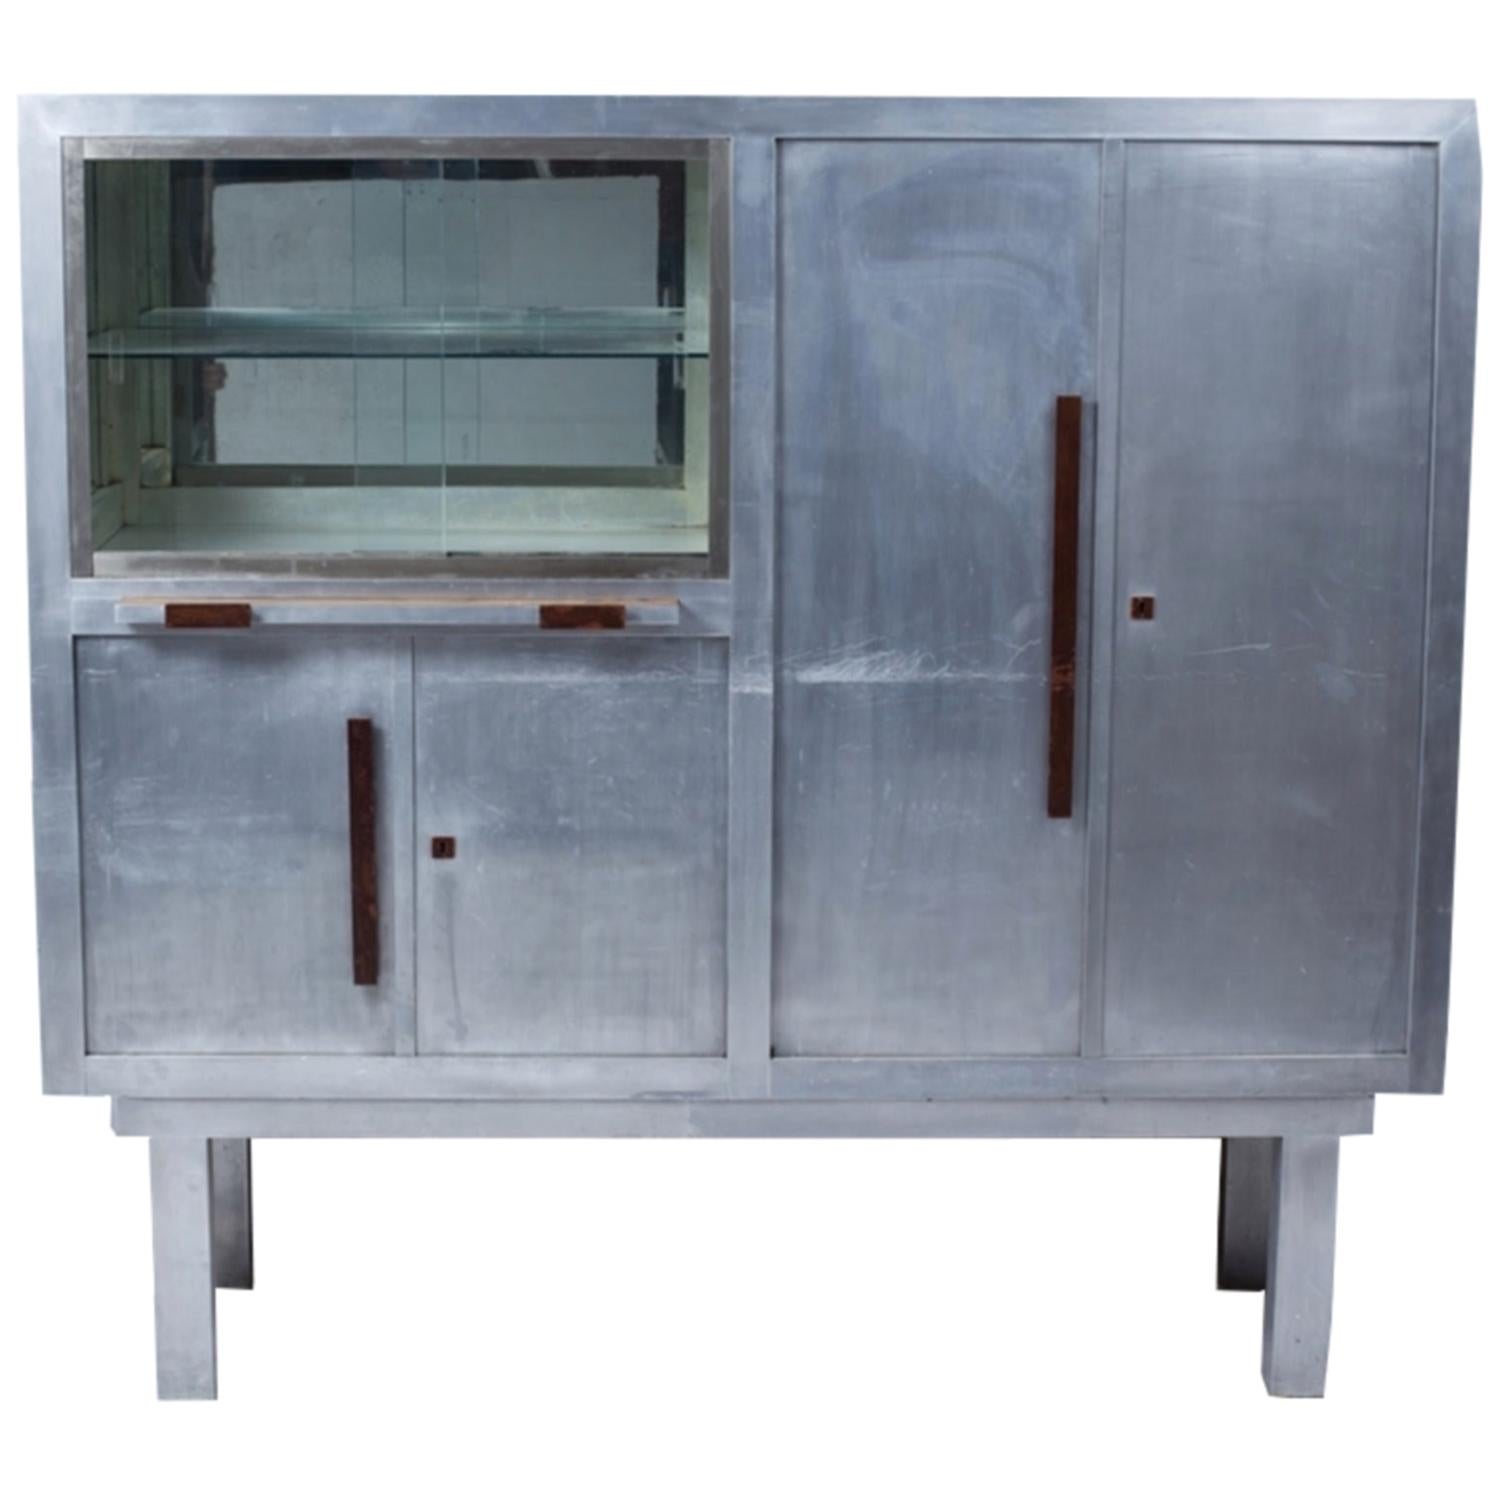 Art Deco Period Aluminum Display Cabinet